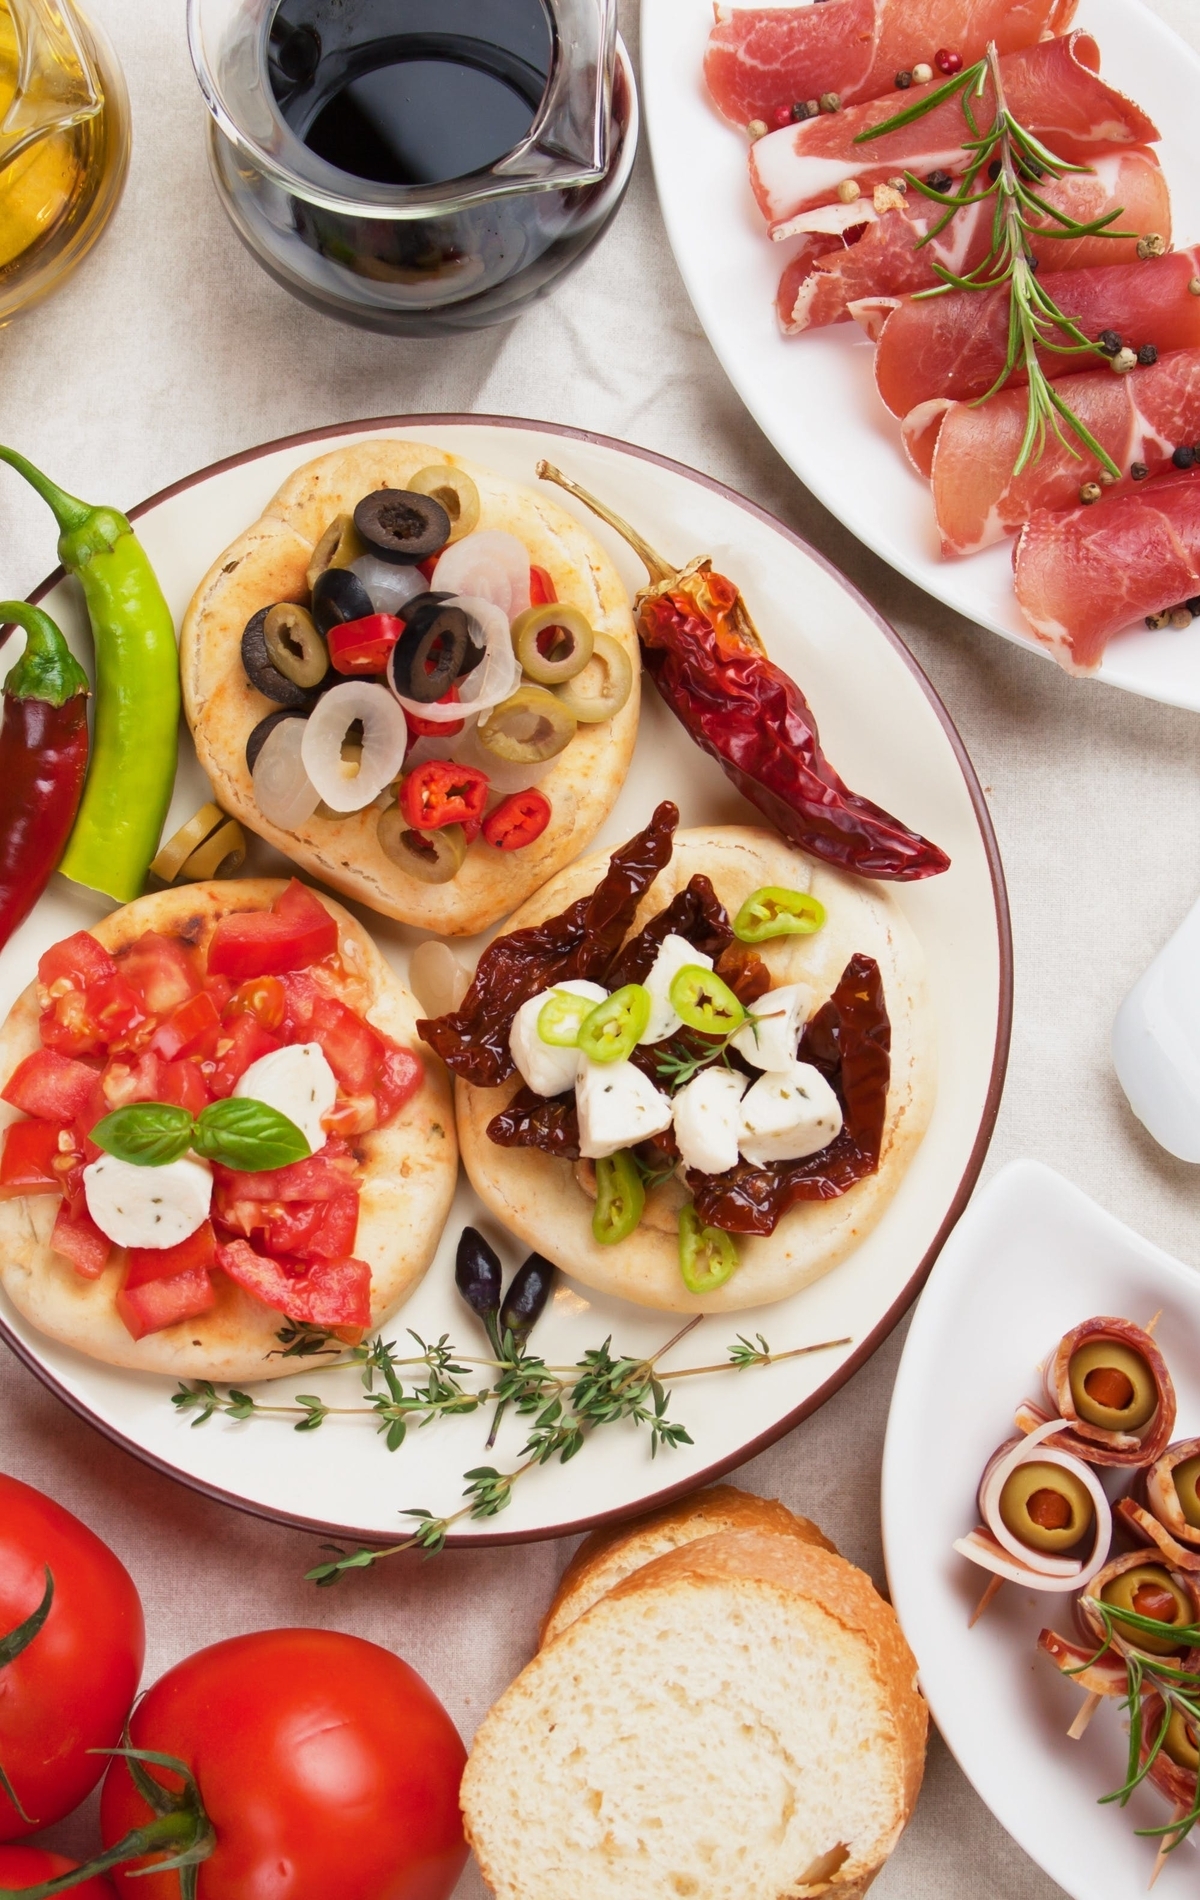 Картинка: Закуска, оливки, маслины, нарезка, перец, помидоры, масло, соус